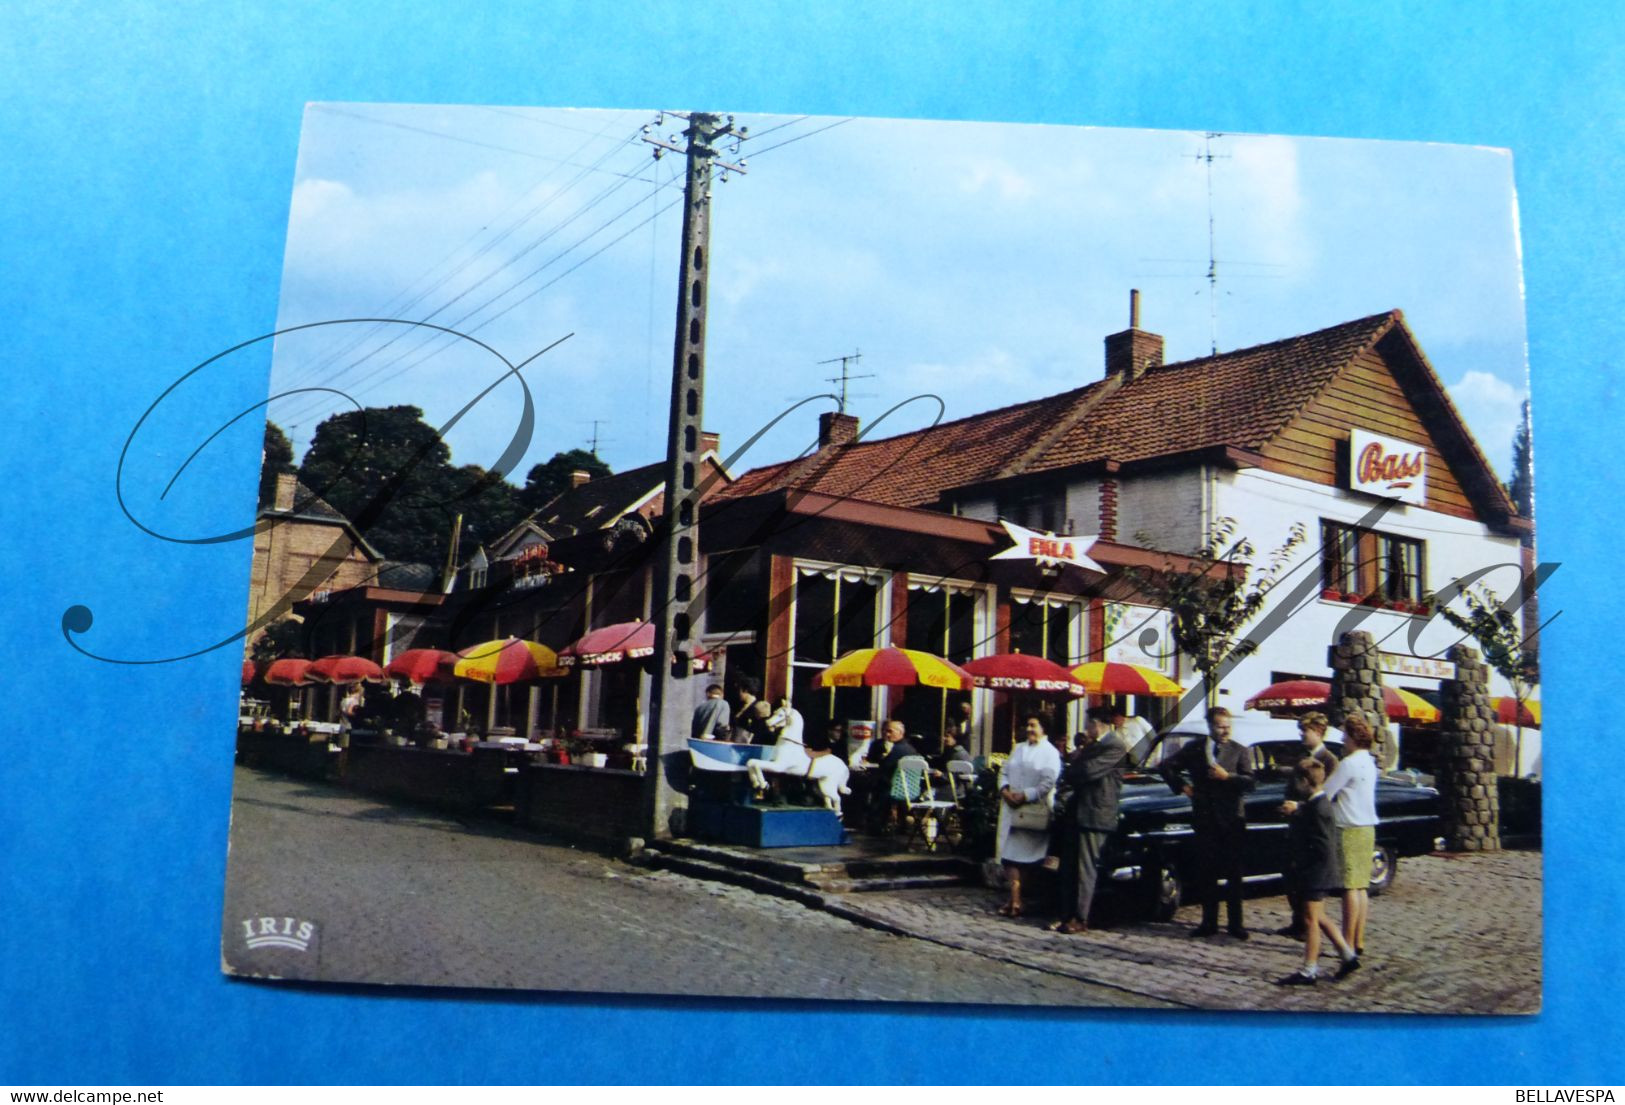 Orroir Kluisbergen Mont -de-l'Enclus Lot x ruim 110 postkaarten